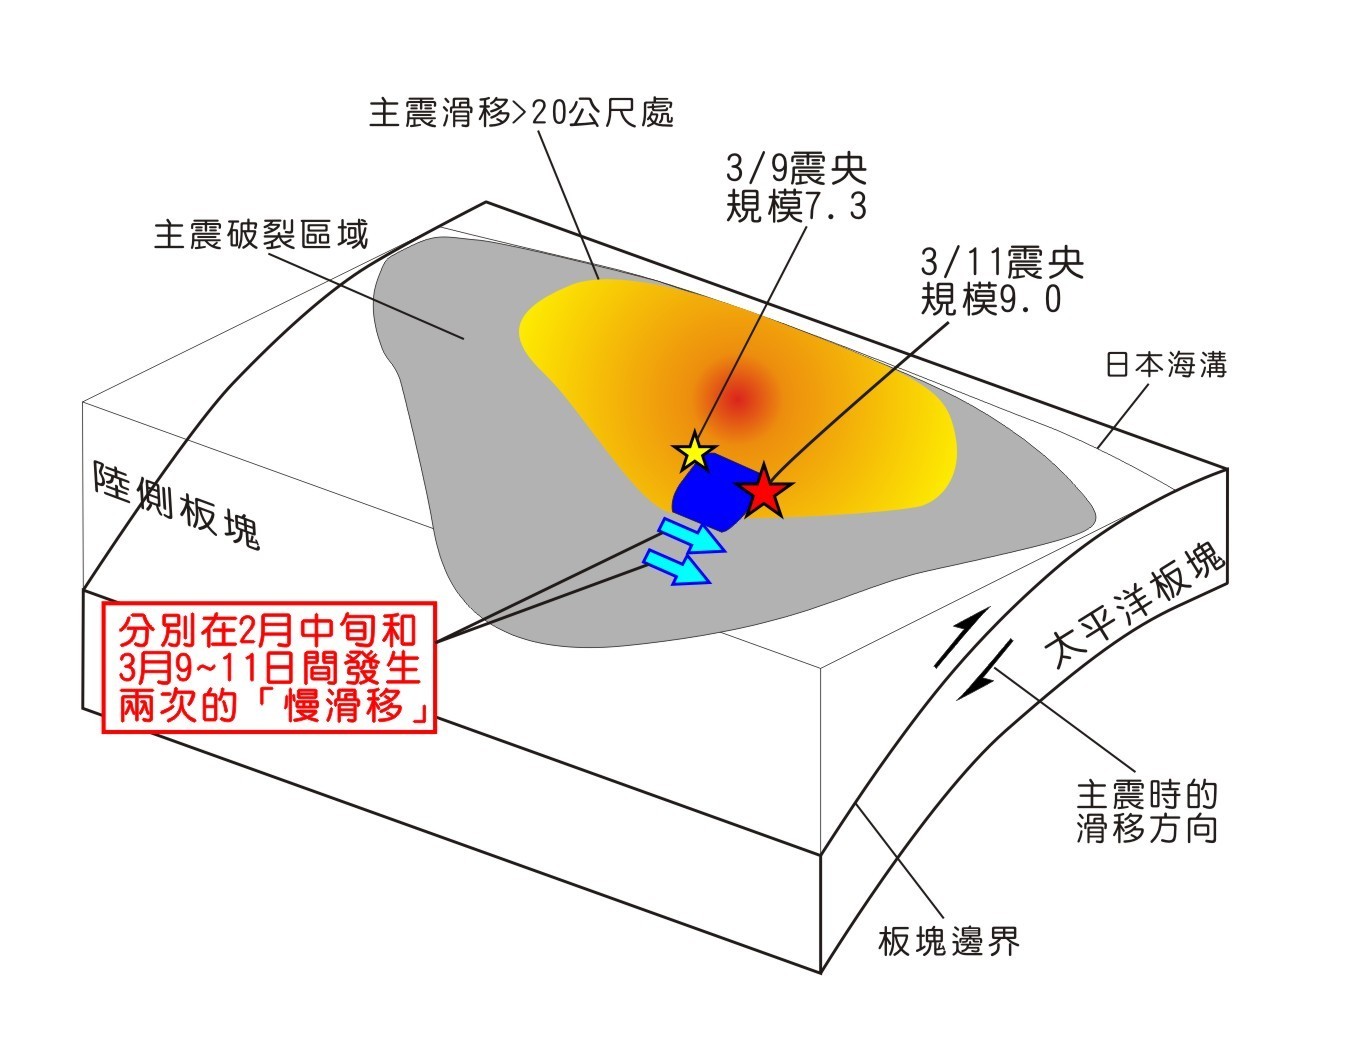 日本311地震震前的「慢滑移」事件，分別在2月份與3月9日之後，微震的分布傳播分別以每日5公里與每日20公里的速度向南傳播。修改自Kato, et. al., 2012，此圖原發布於「小地震，大災難」文章。